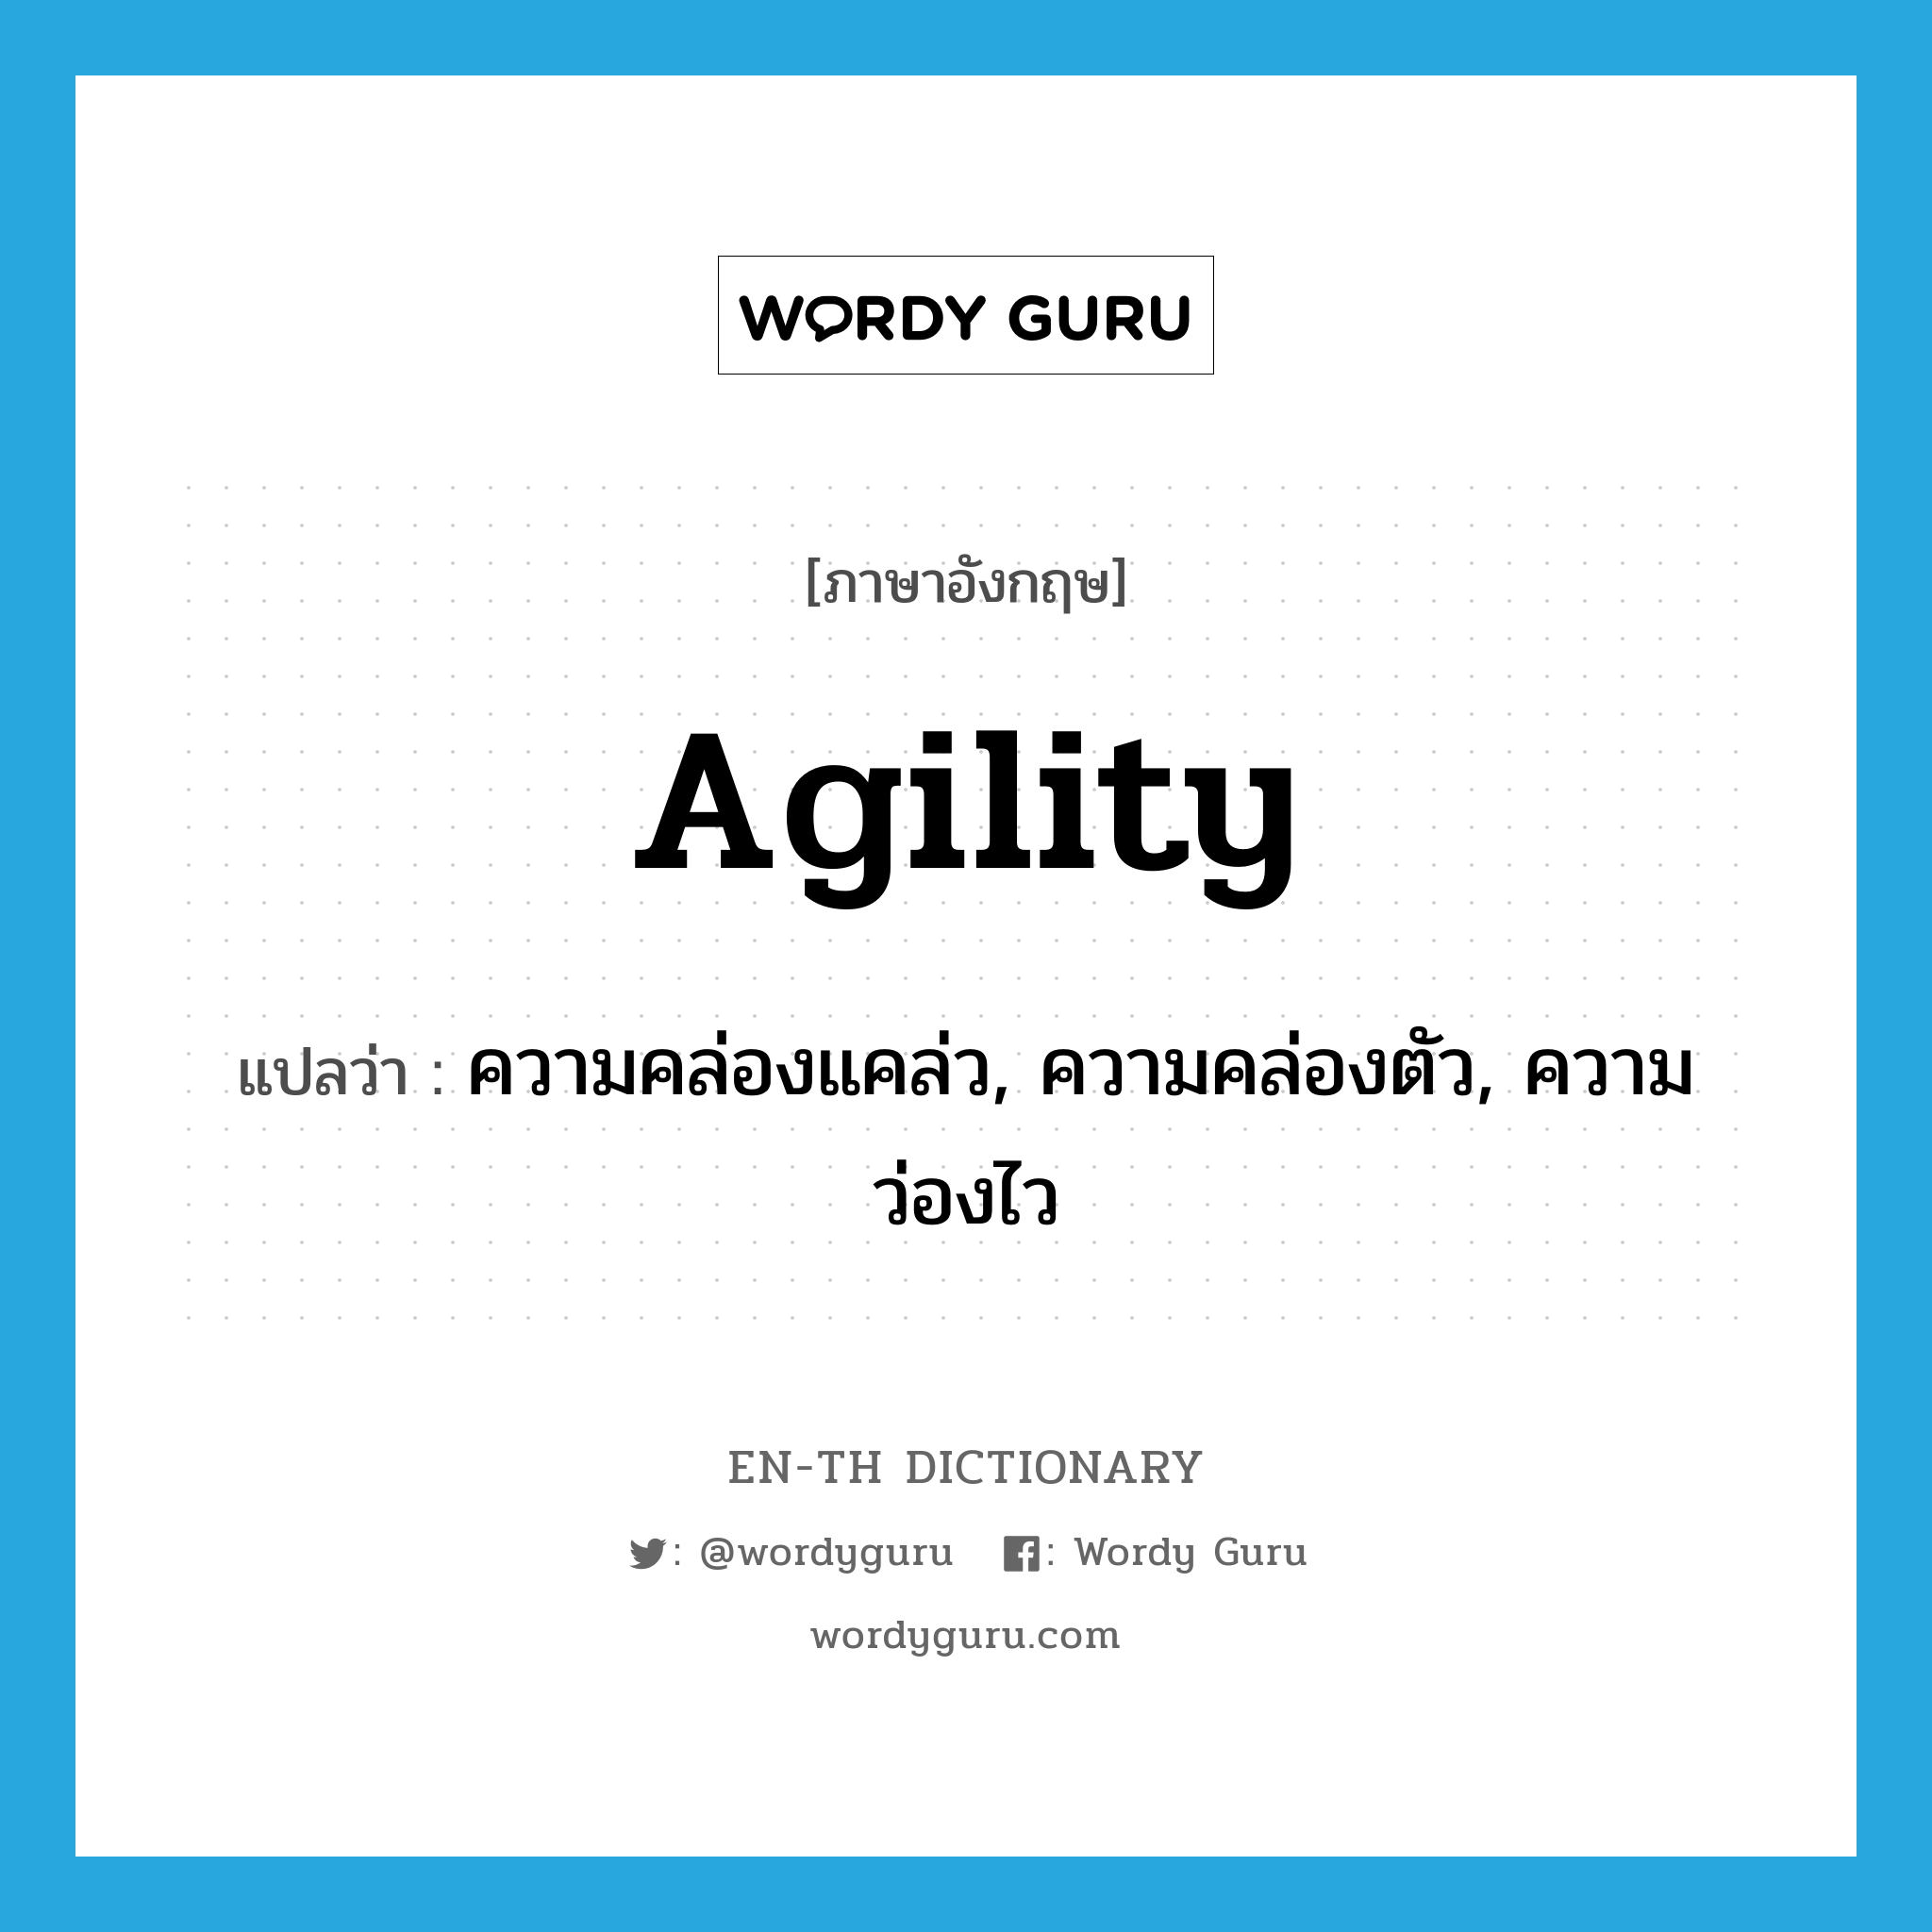 agility แปลว่า?, คำศัพท์ภาษาอังกฤษ agility แปลว่า ความคล่องแคล่ว, ความคล่องตัว, ความว่องไว ประเภท N หมวด N